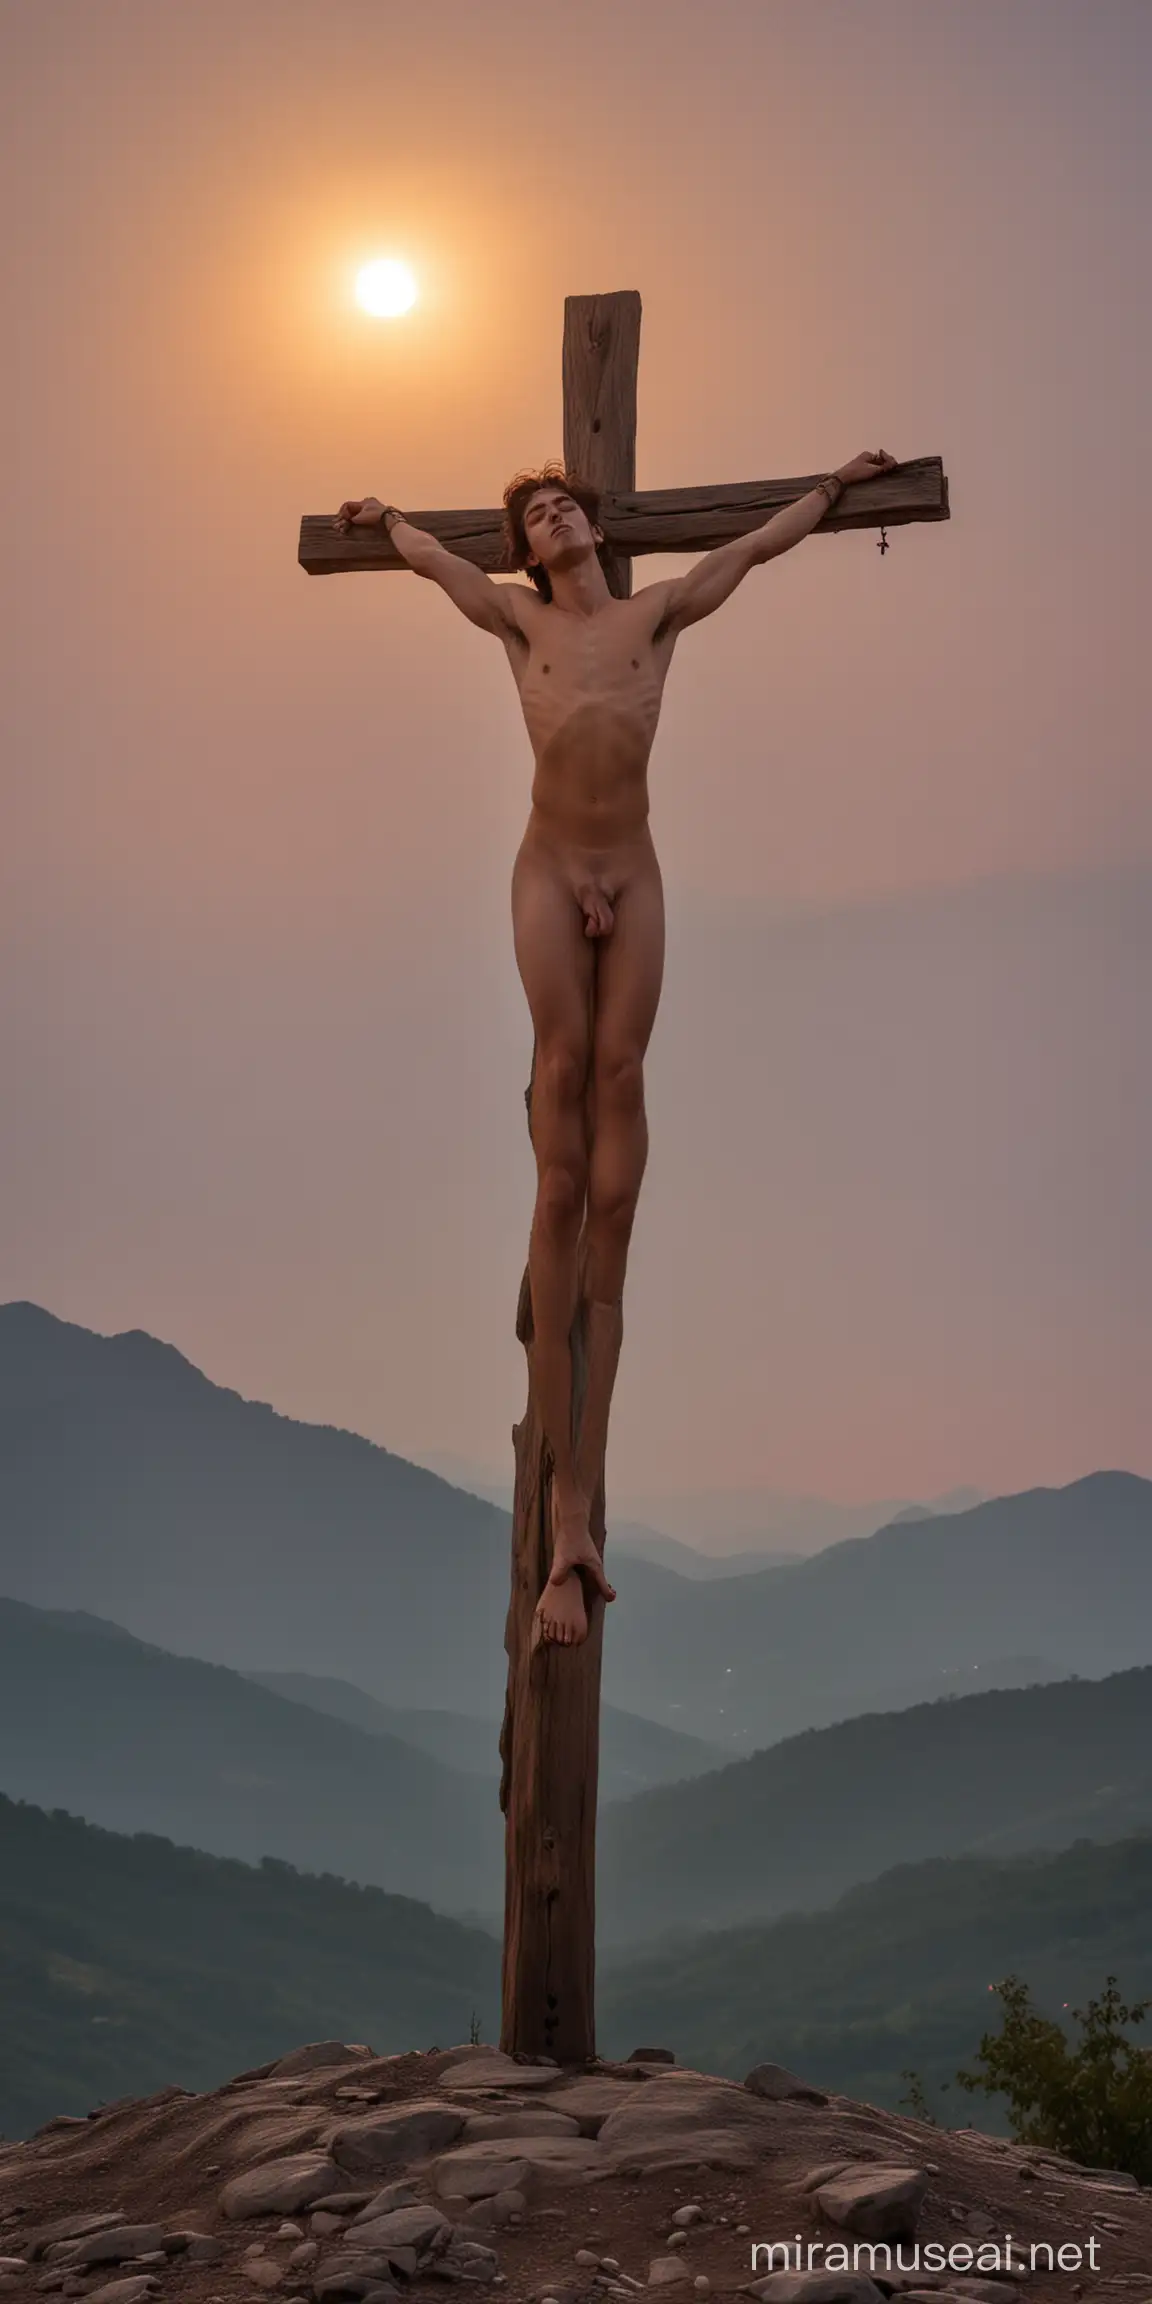 Rapaz crucificado (pregado na cruz) sem nenhuma roupa, pelado, sem panos, nu, visão frontal, ambiente montanhoso, eclipse solar (lua encobrindo o sol) iluminação de anoitecer, colorido.